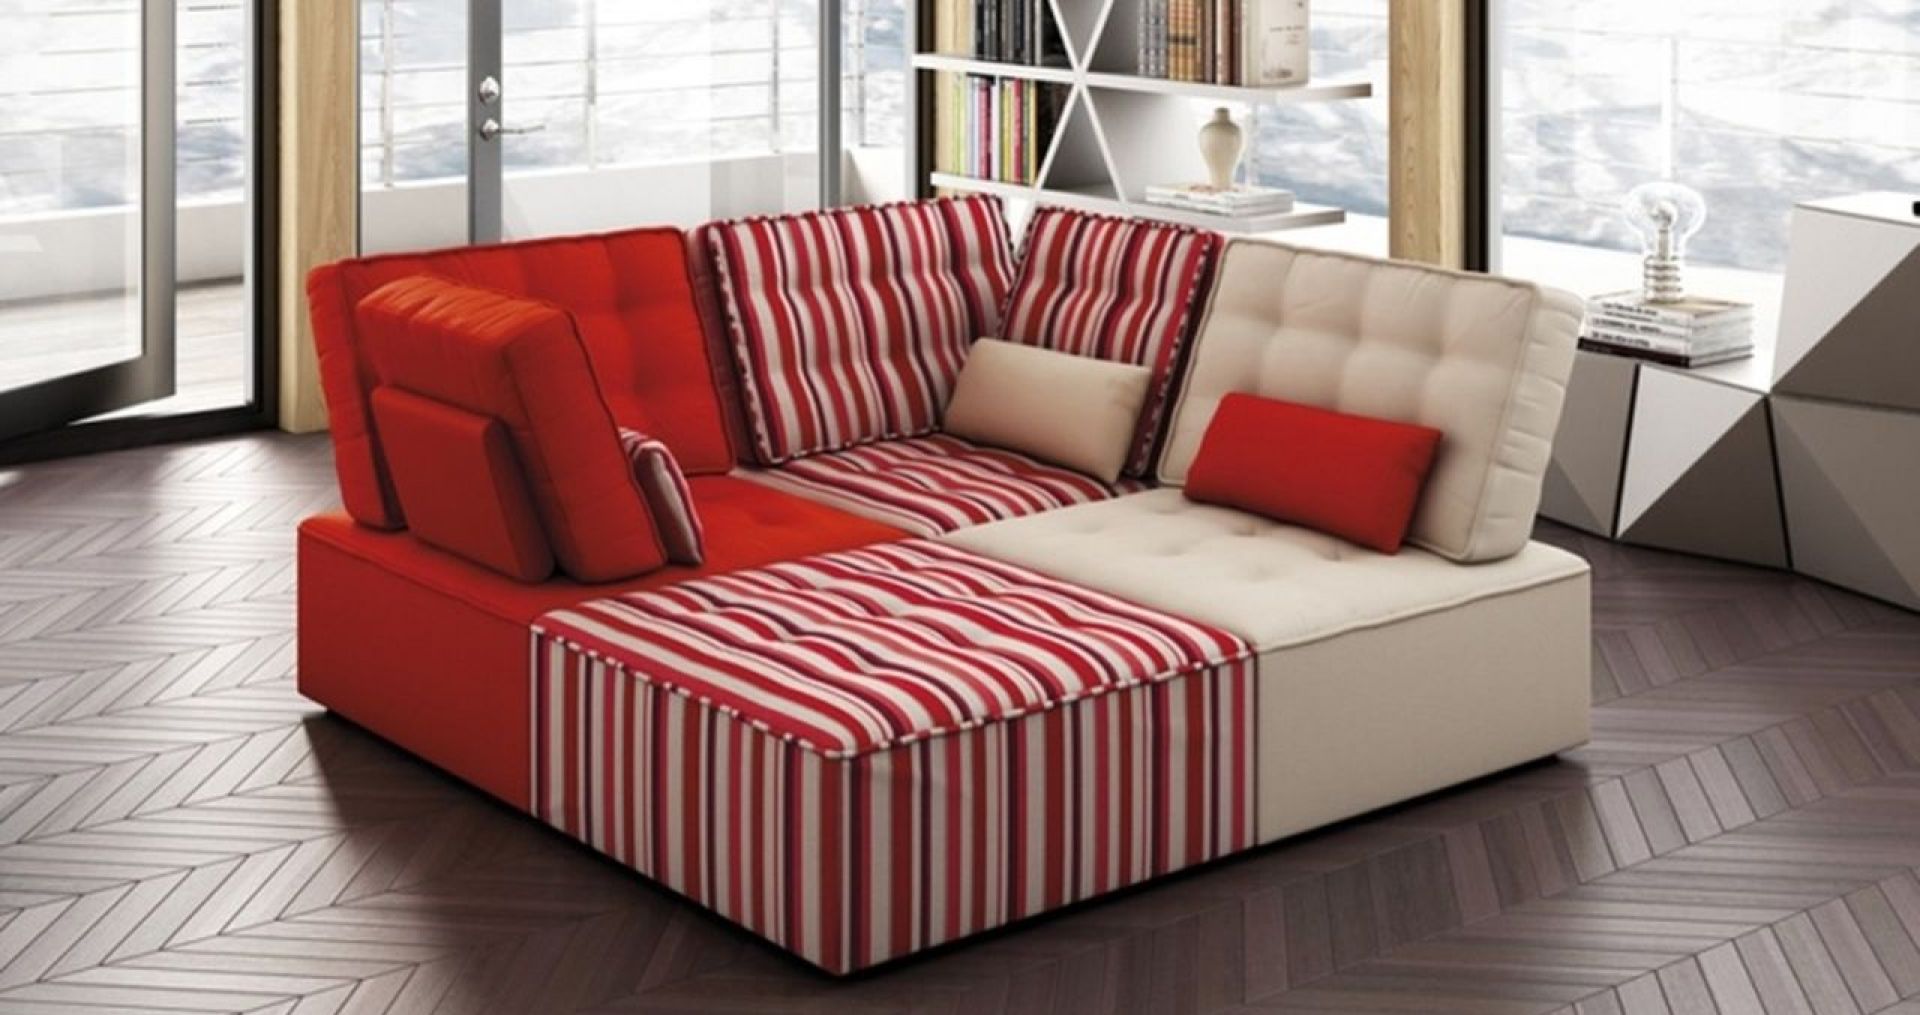 Sofa idealna do popołudniowych drzemek oraz wieczornych seansów filmowych. Dzięki modułom sofę można zestawiać w taki sposób, aby była komfortową leżanką. Fot. Muebles Lara